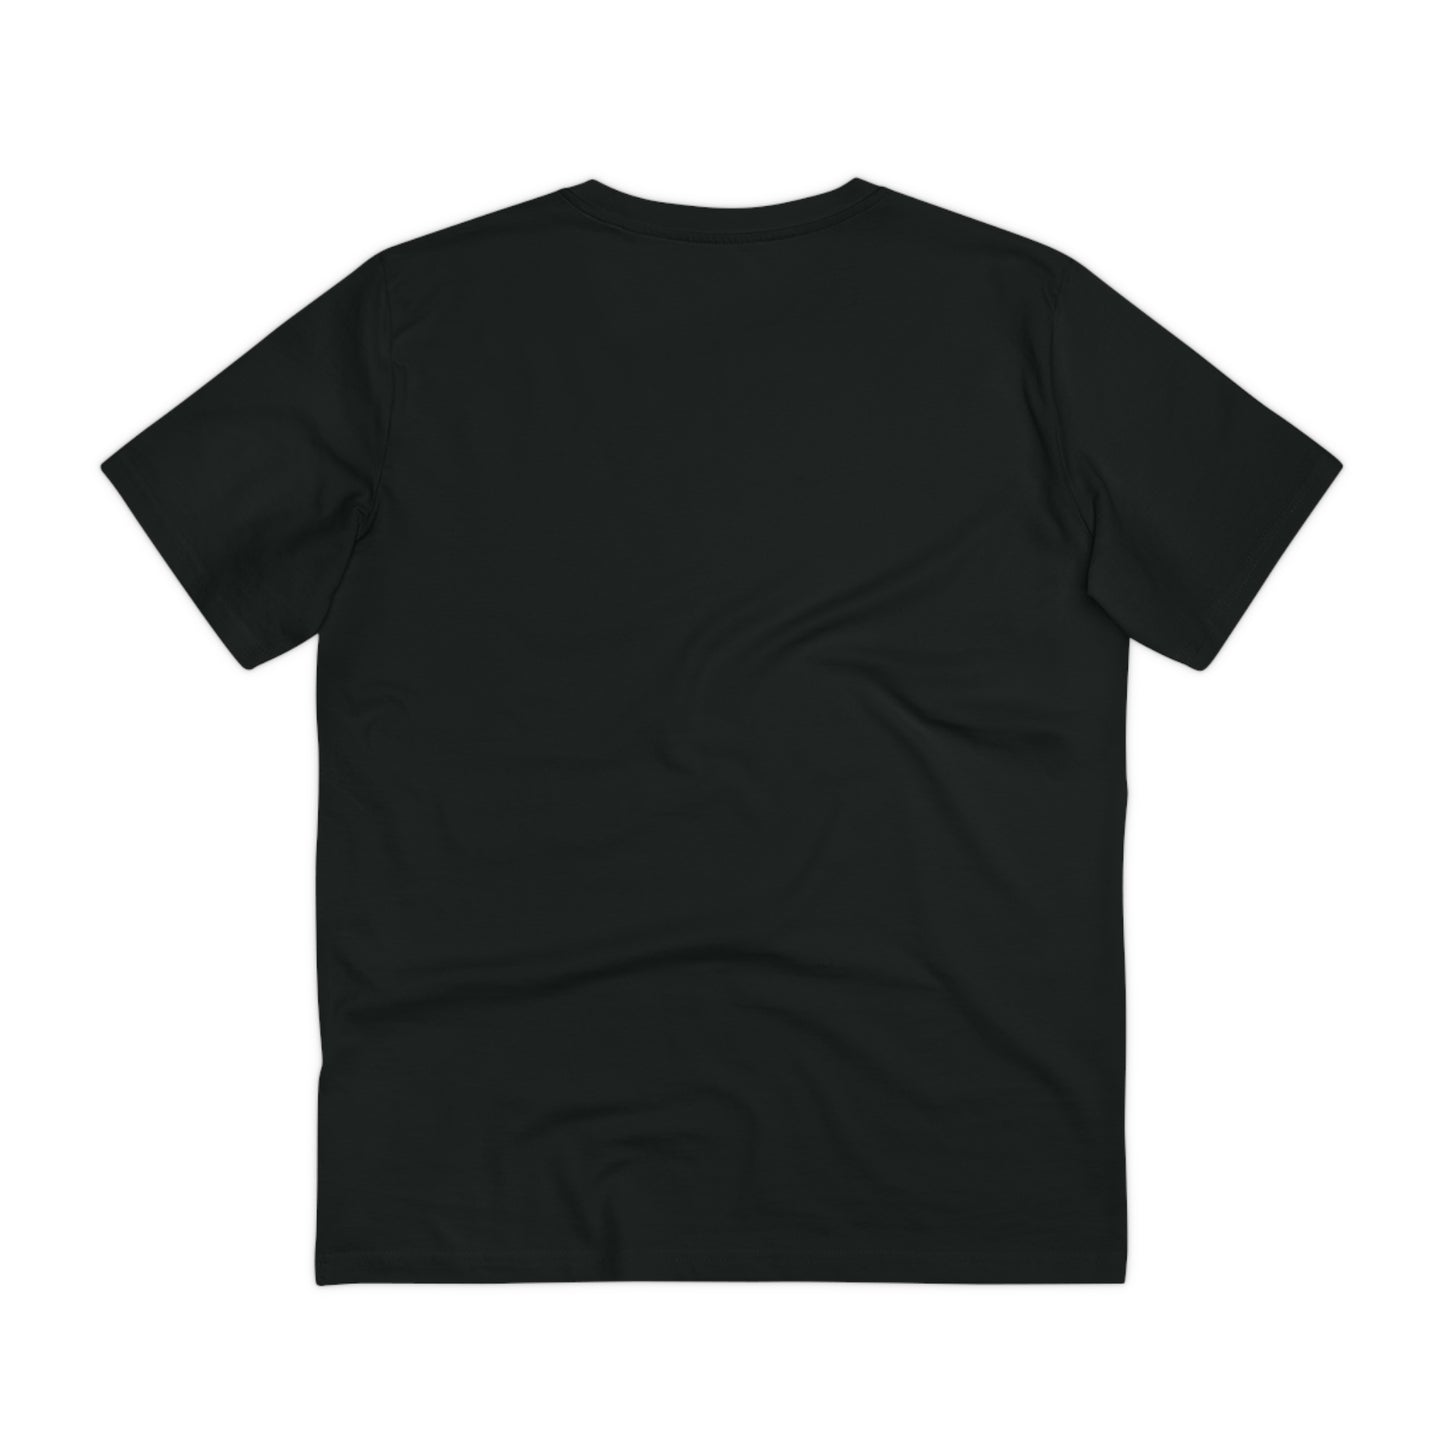 Organic ENERGY T-shirt Desert Dust/Black - Unisex